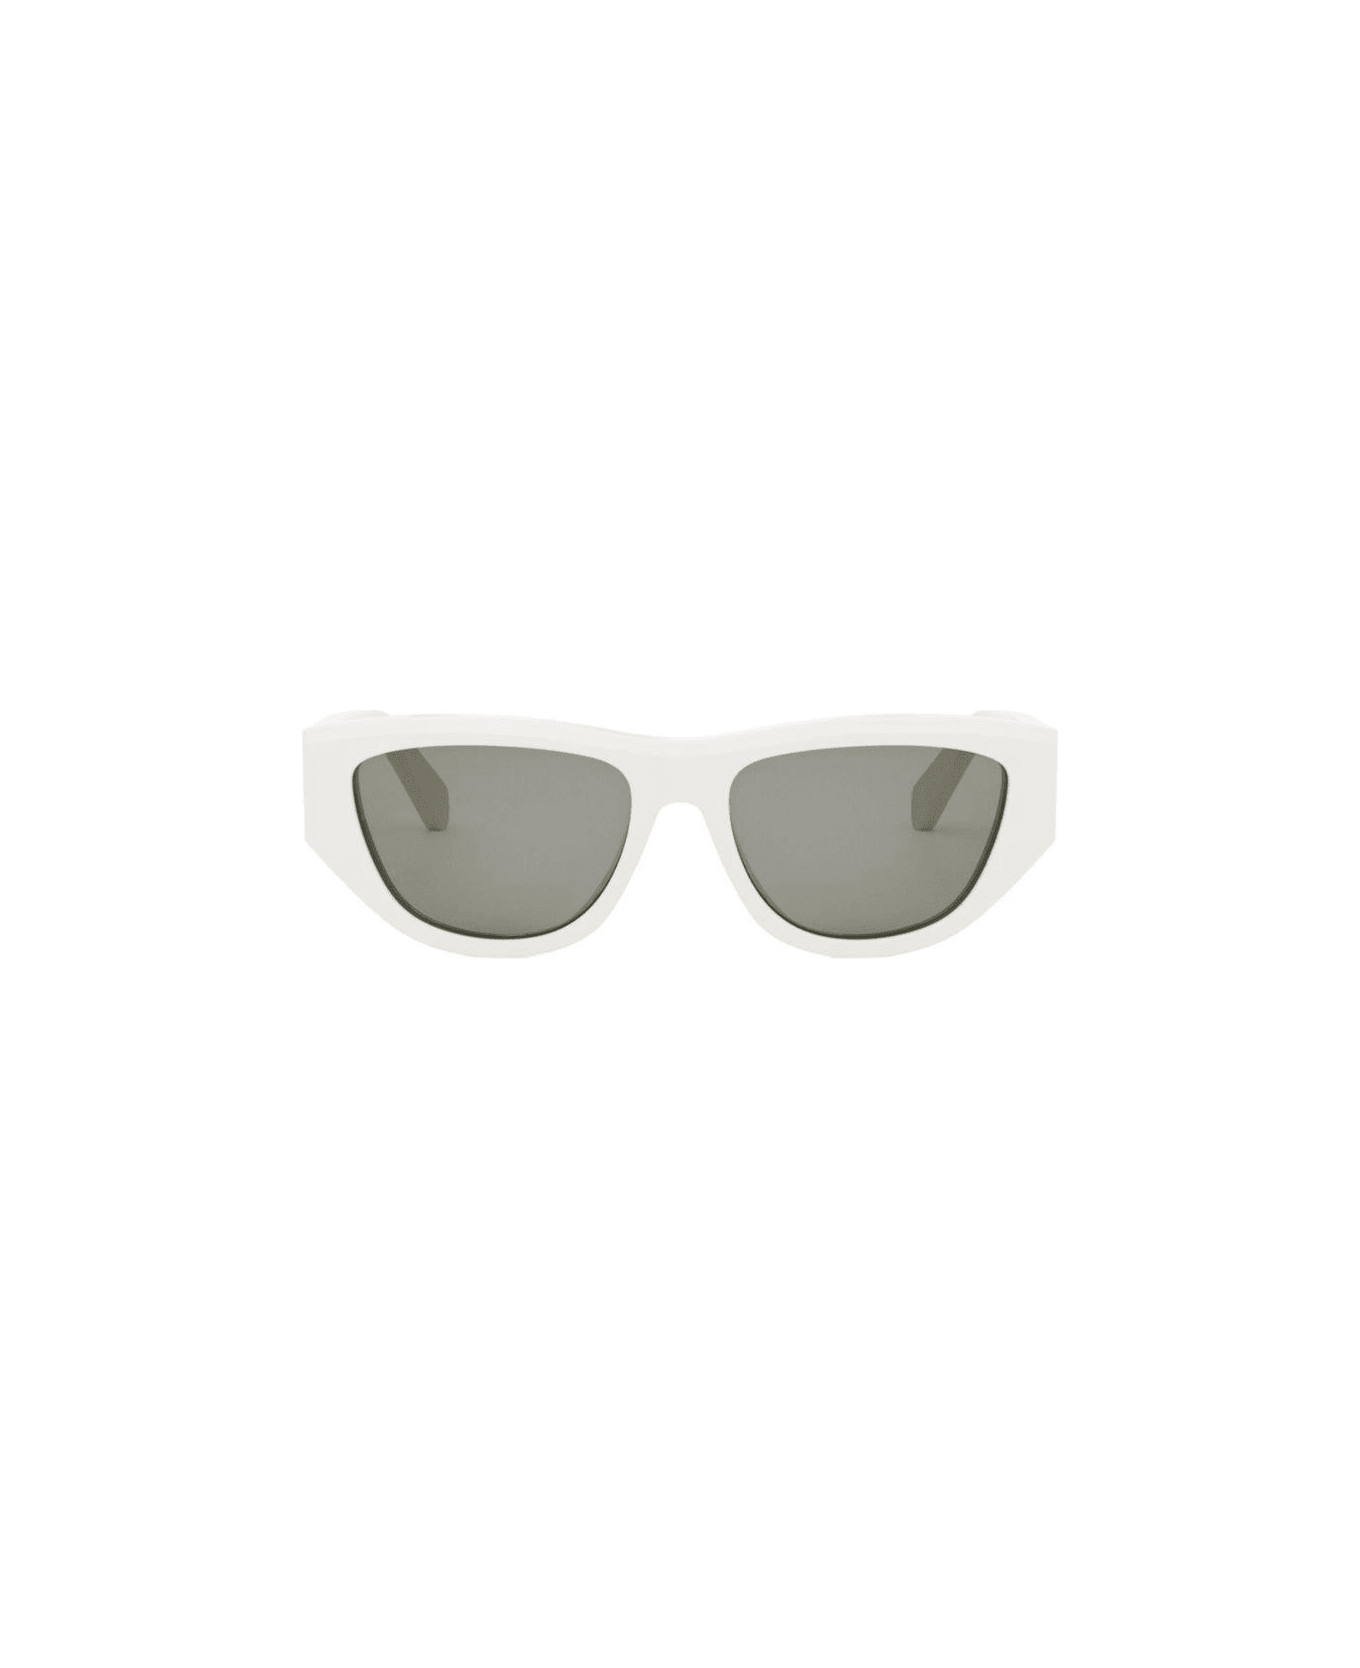 Celine Cat-eye Frame Unisex Sunglasses - 25a